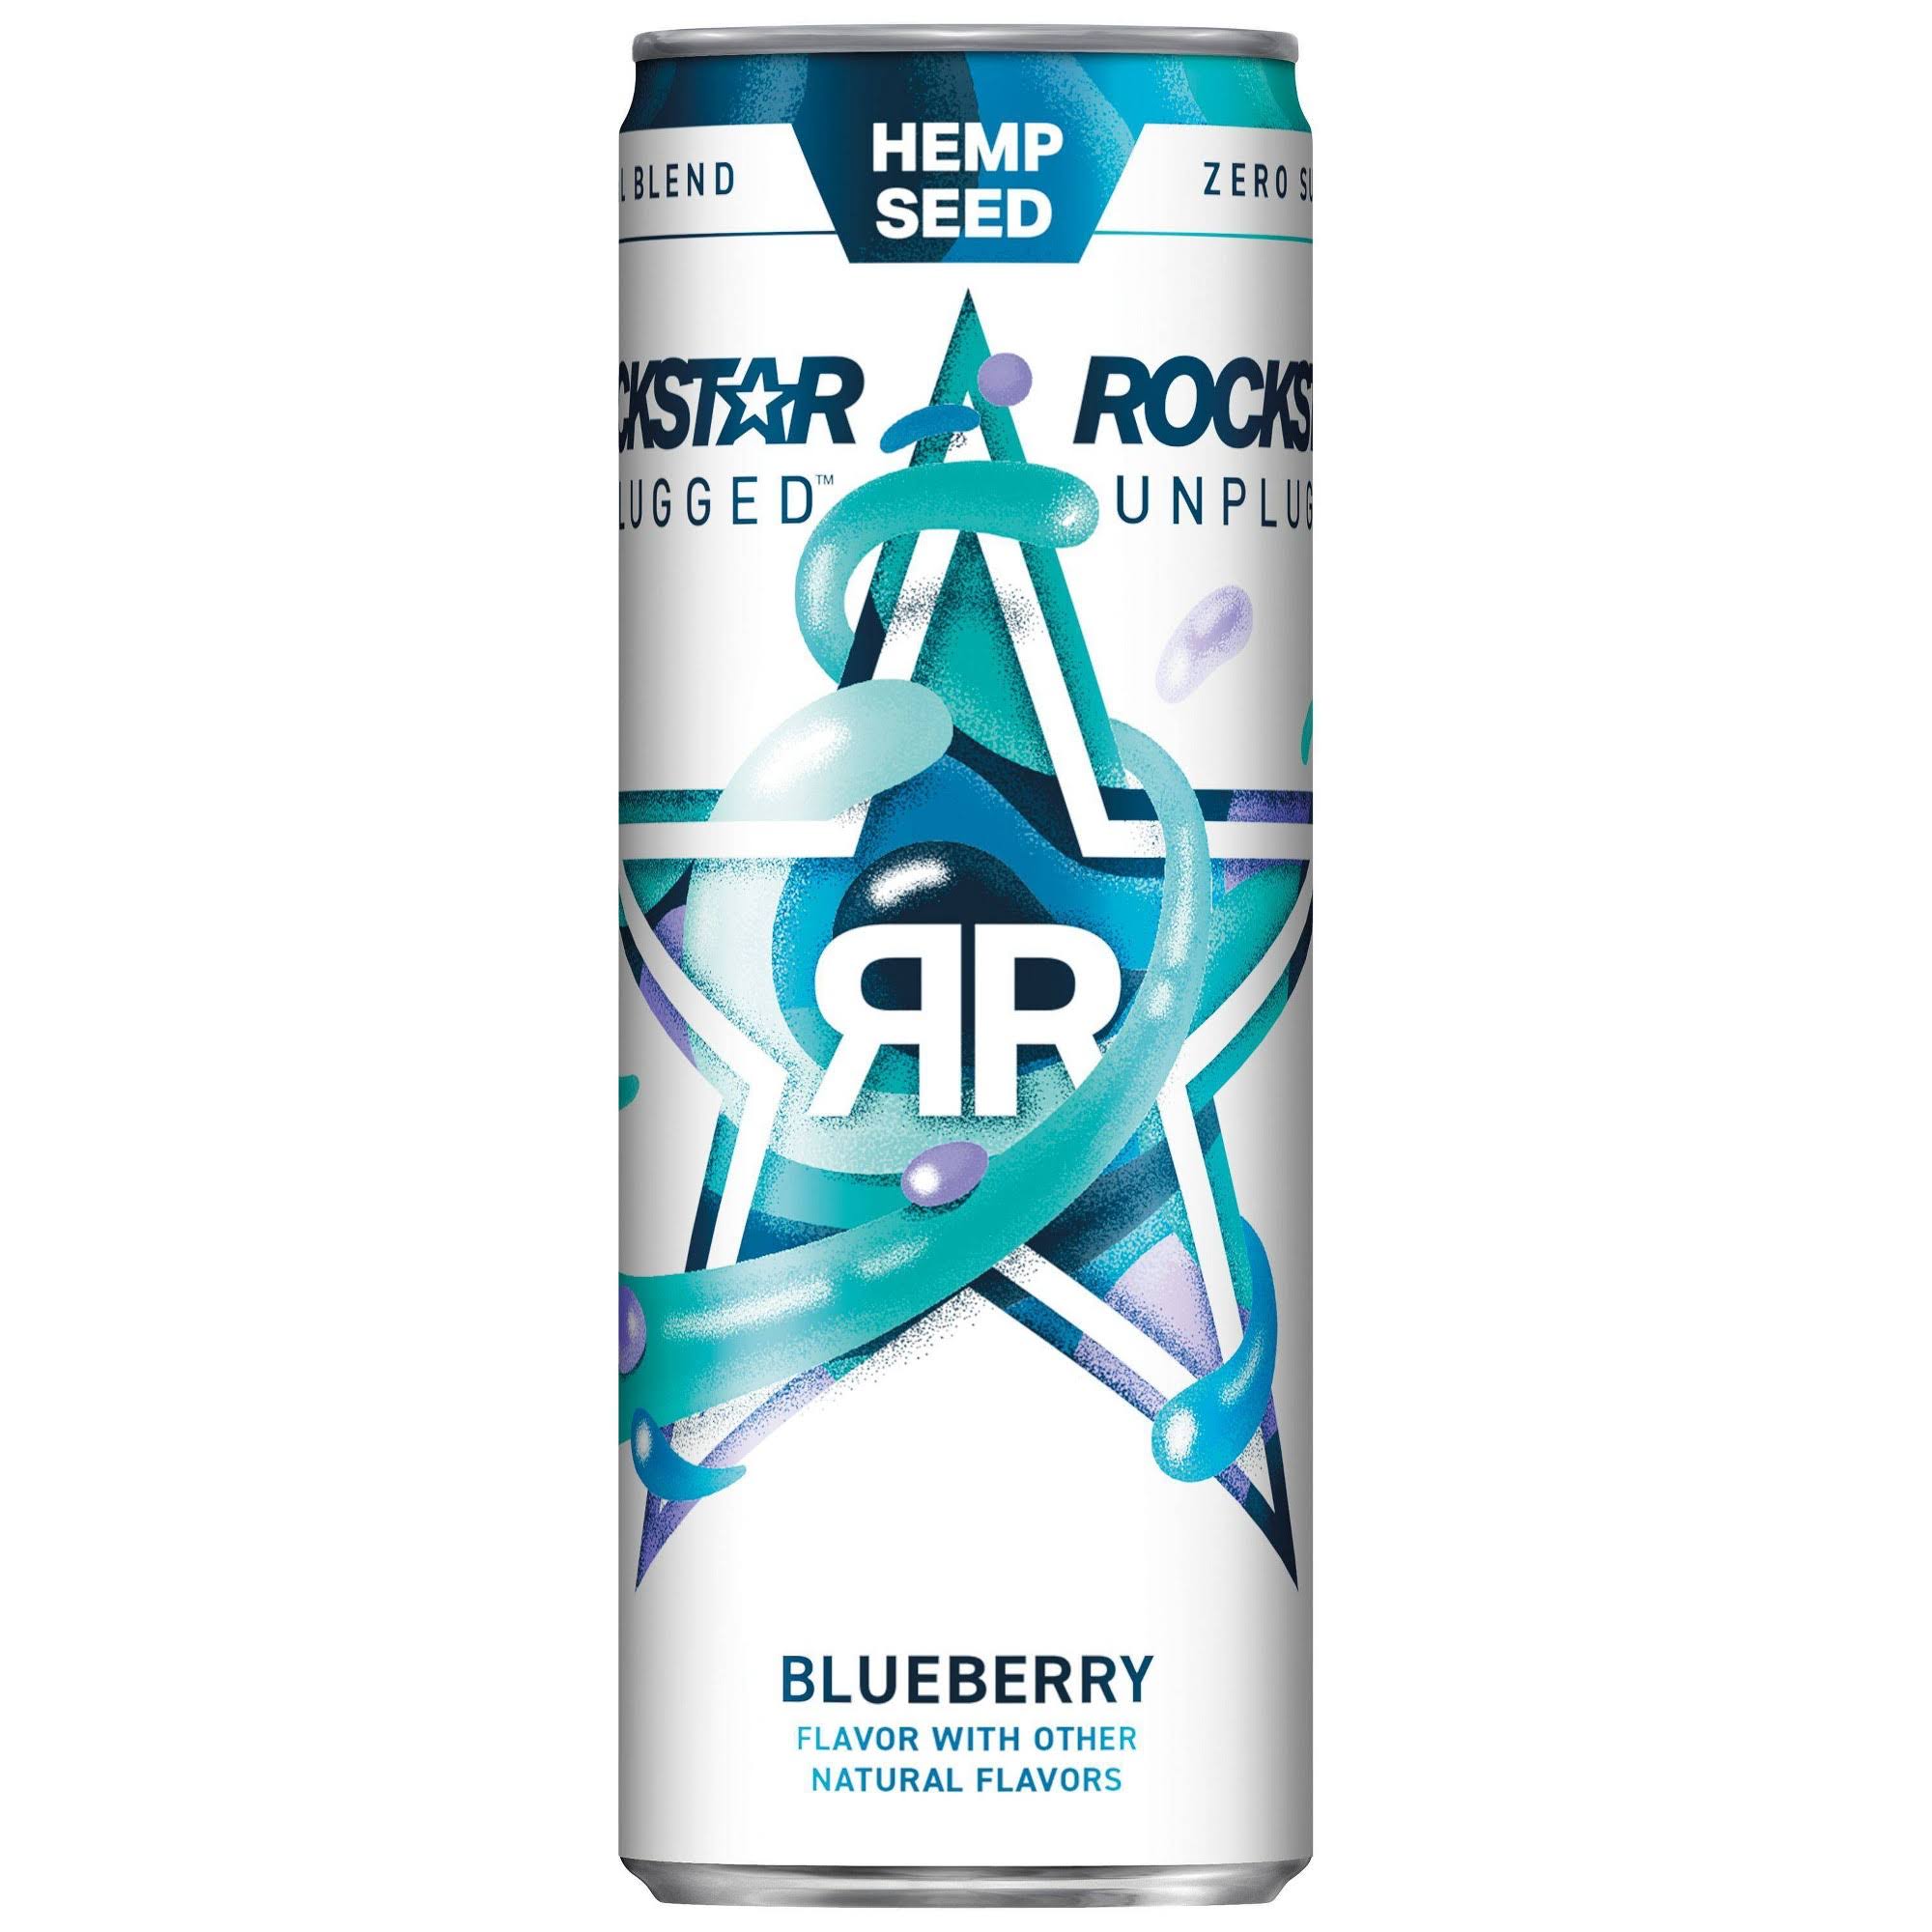 Rockstar Unplugged Energy Drink, Sugar Free, Hemp Seed, Blueberry - 12 fl oz